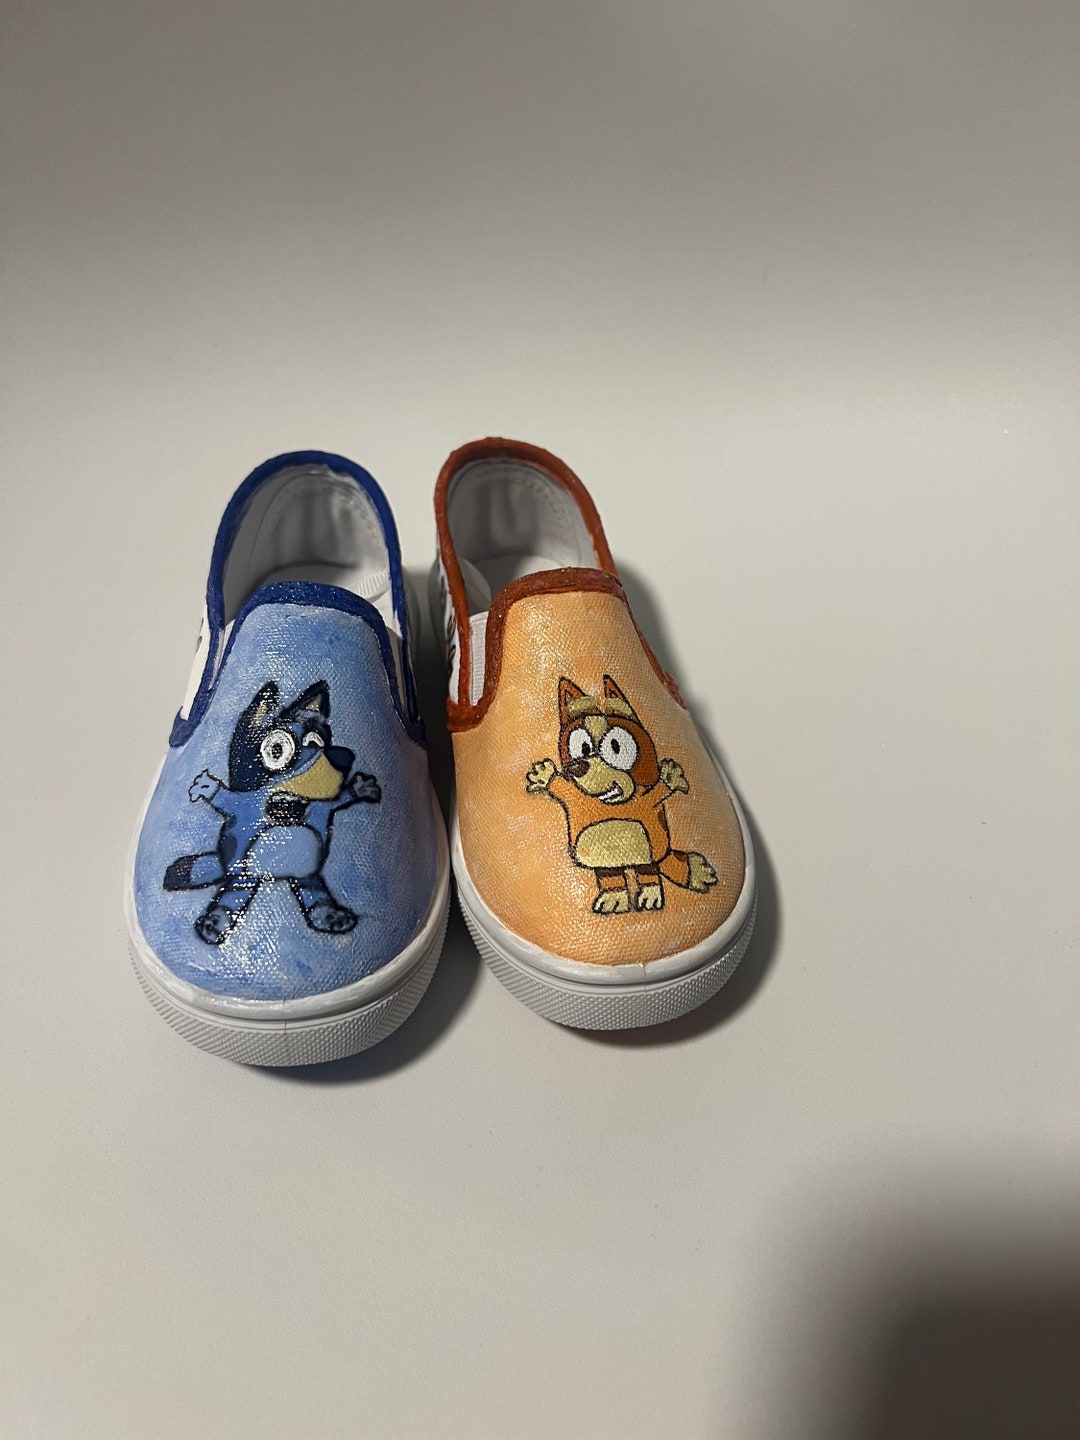 Bluey Bingo Painted Custom Shoes - Etsy